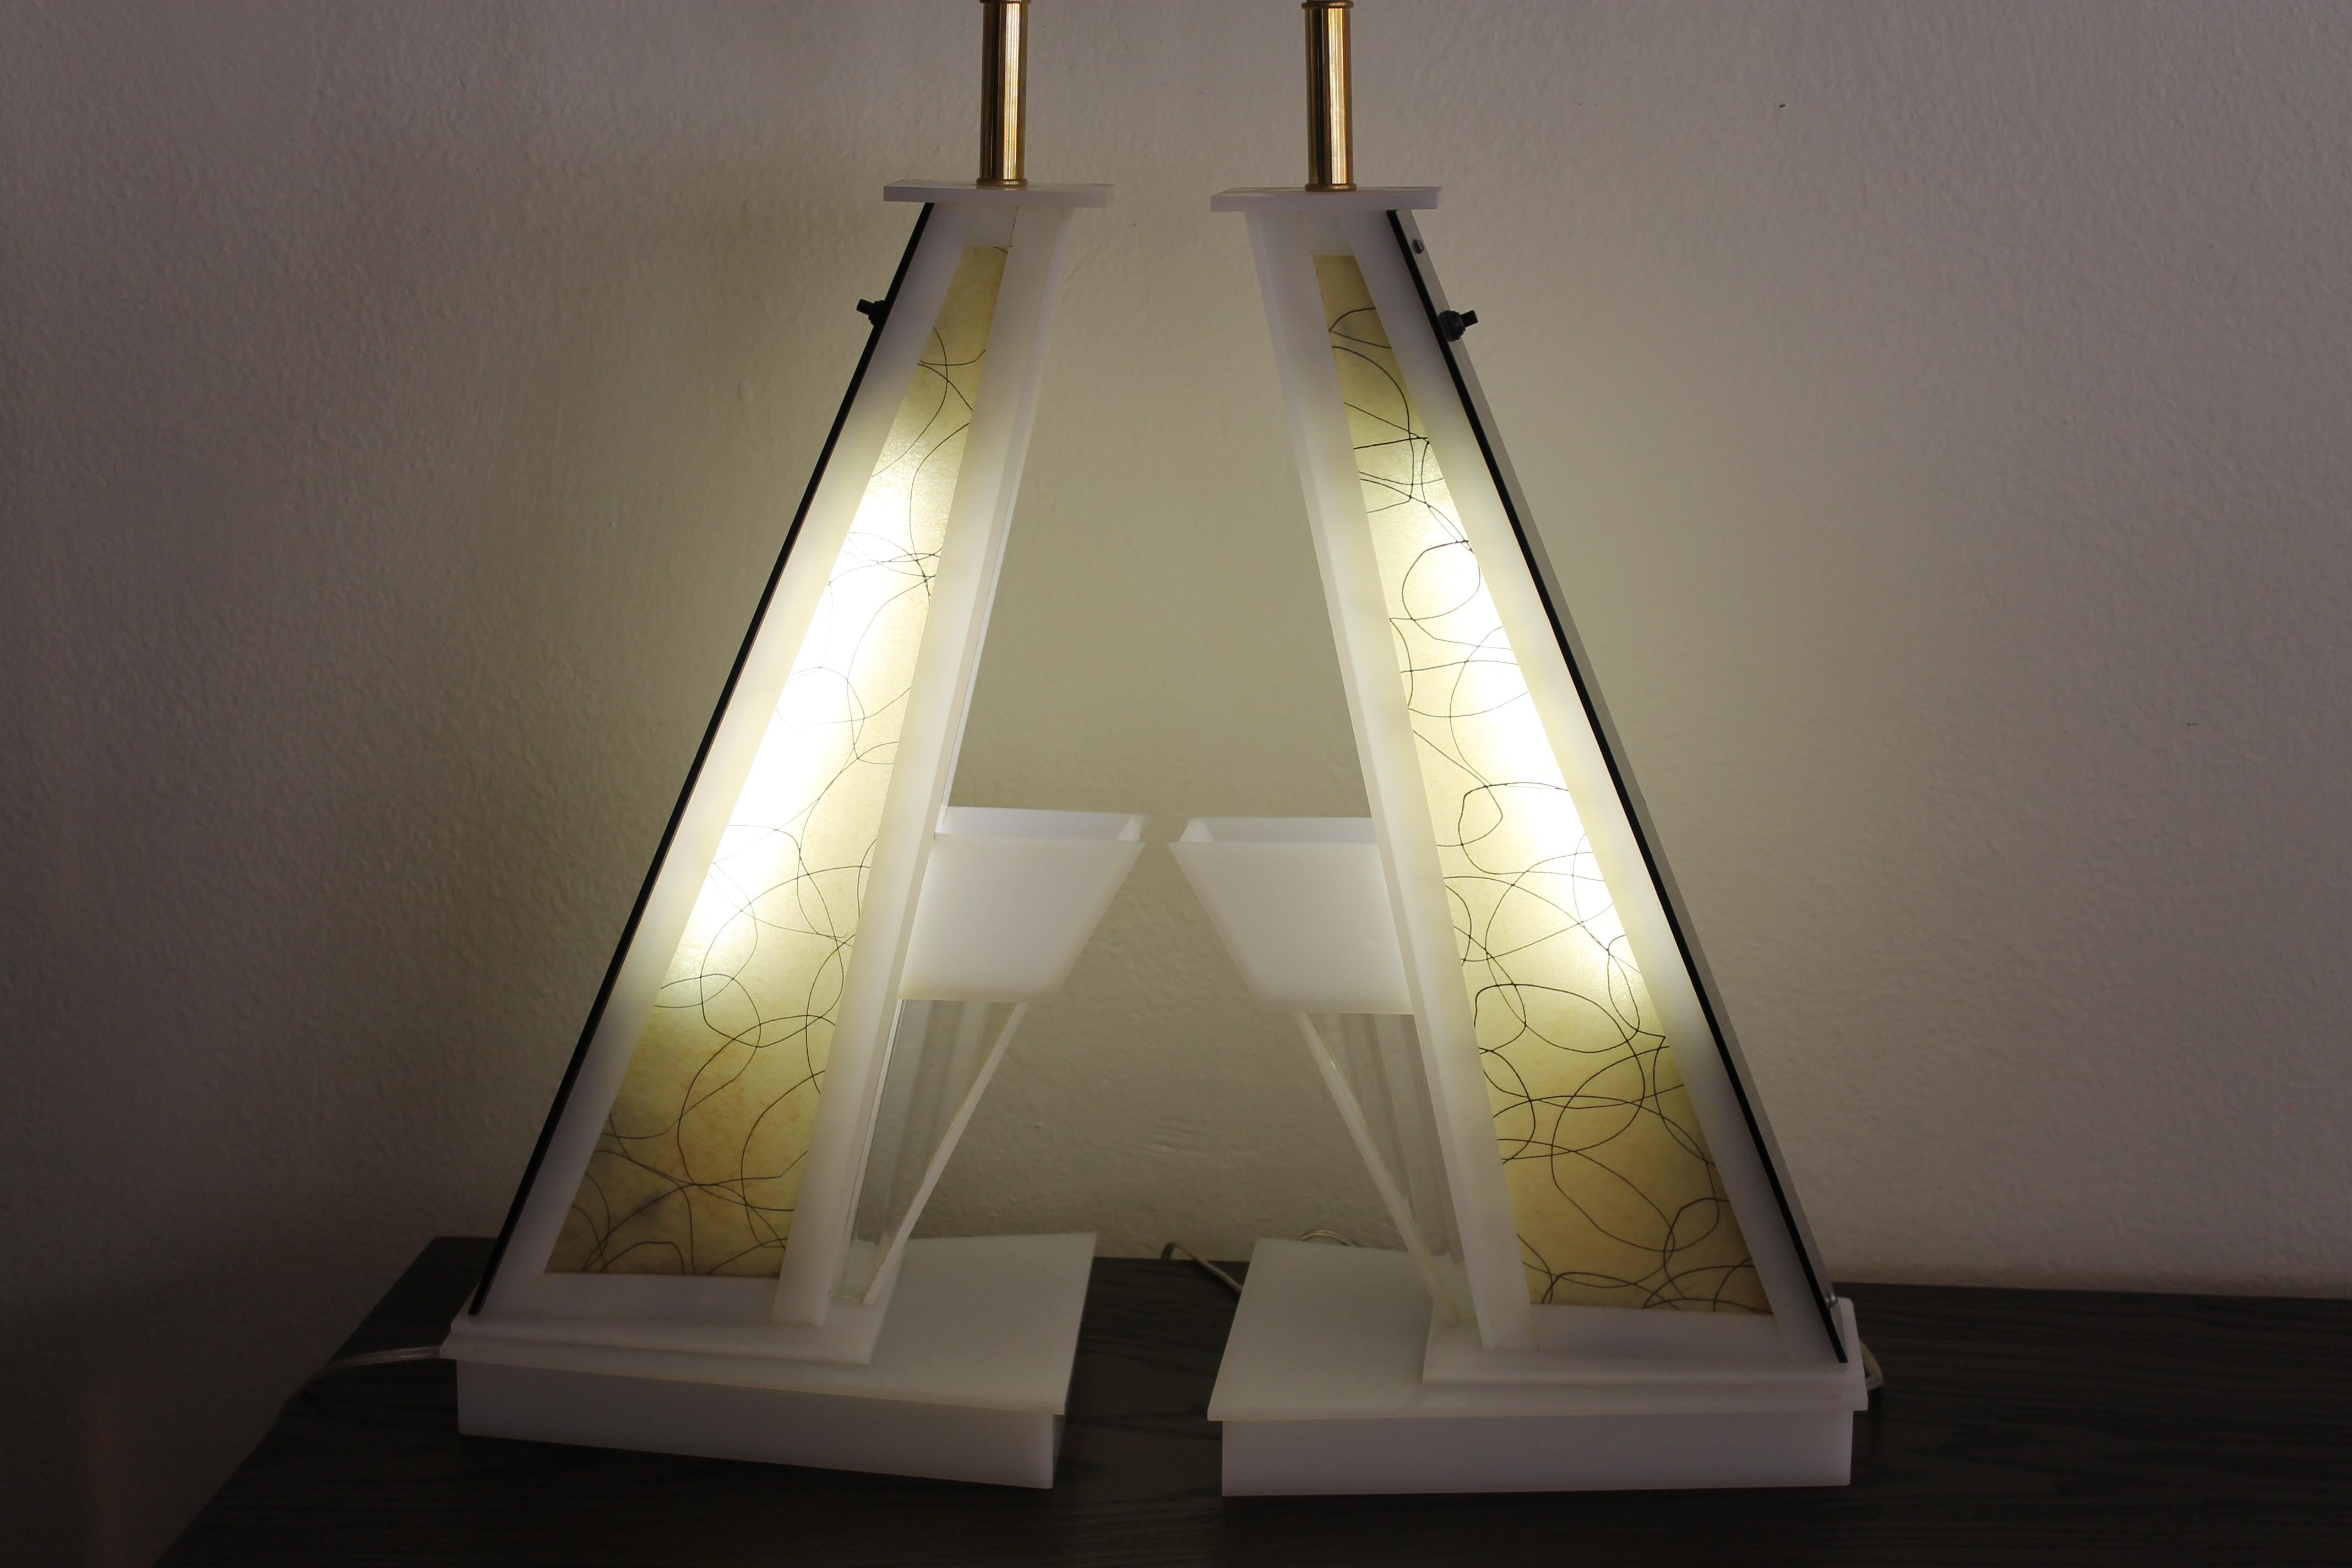 Paire de lampes de table angulaires en lucite de la société Moss lighting. Les lampes ont un interrupteur qui éclaire les parties intérieures en plus de l'interrupteur des douilles.  Les lampes mesurent 9